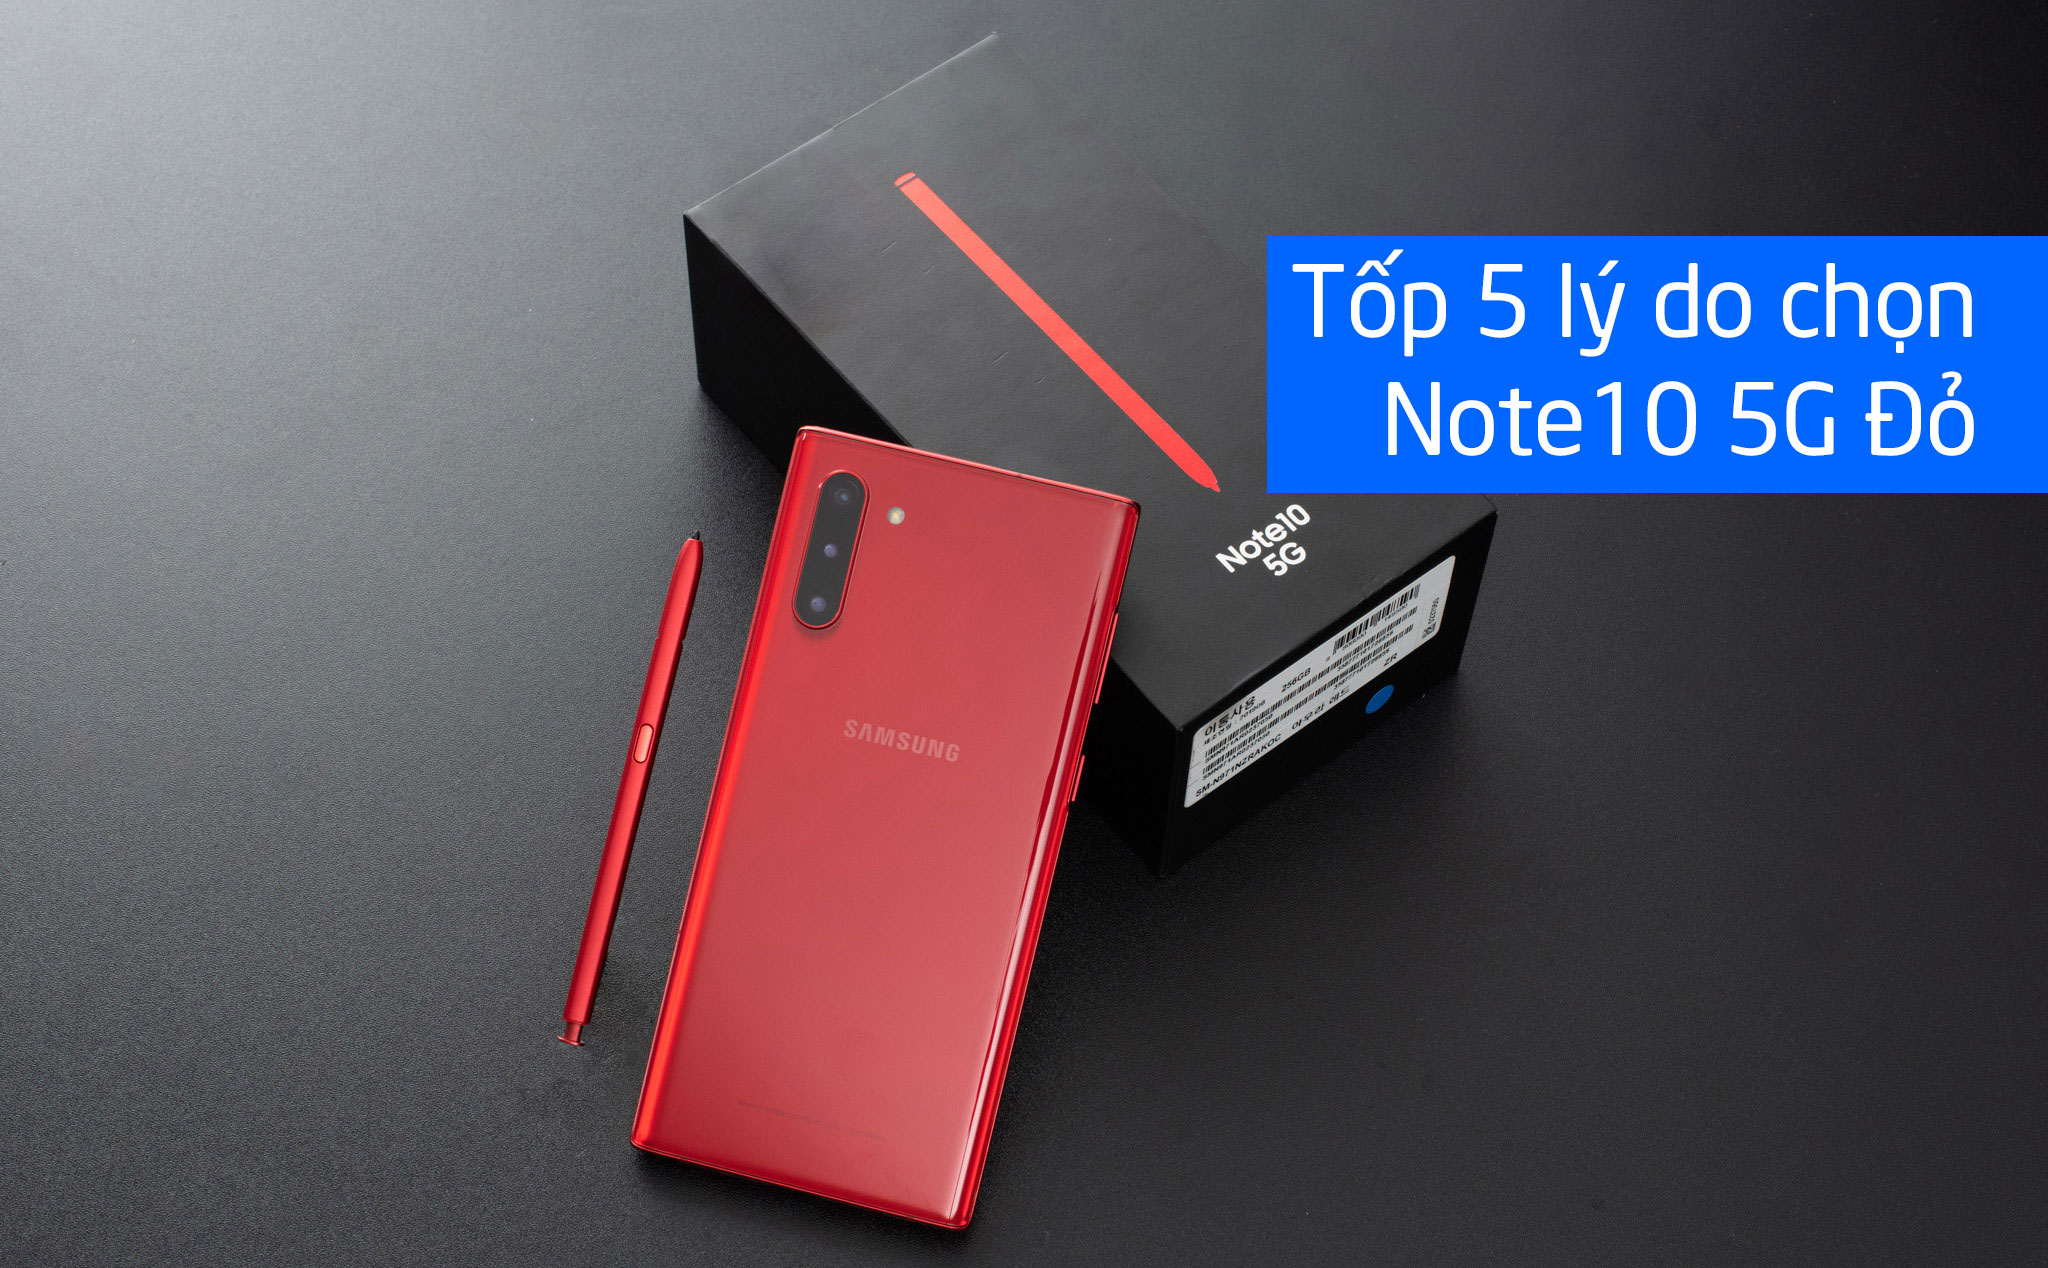 Tốp 5 lý do chọn Note10 5G Đỏ: 5G, Đỏ, Thiết kế, Cấu hình, chống nước